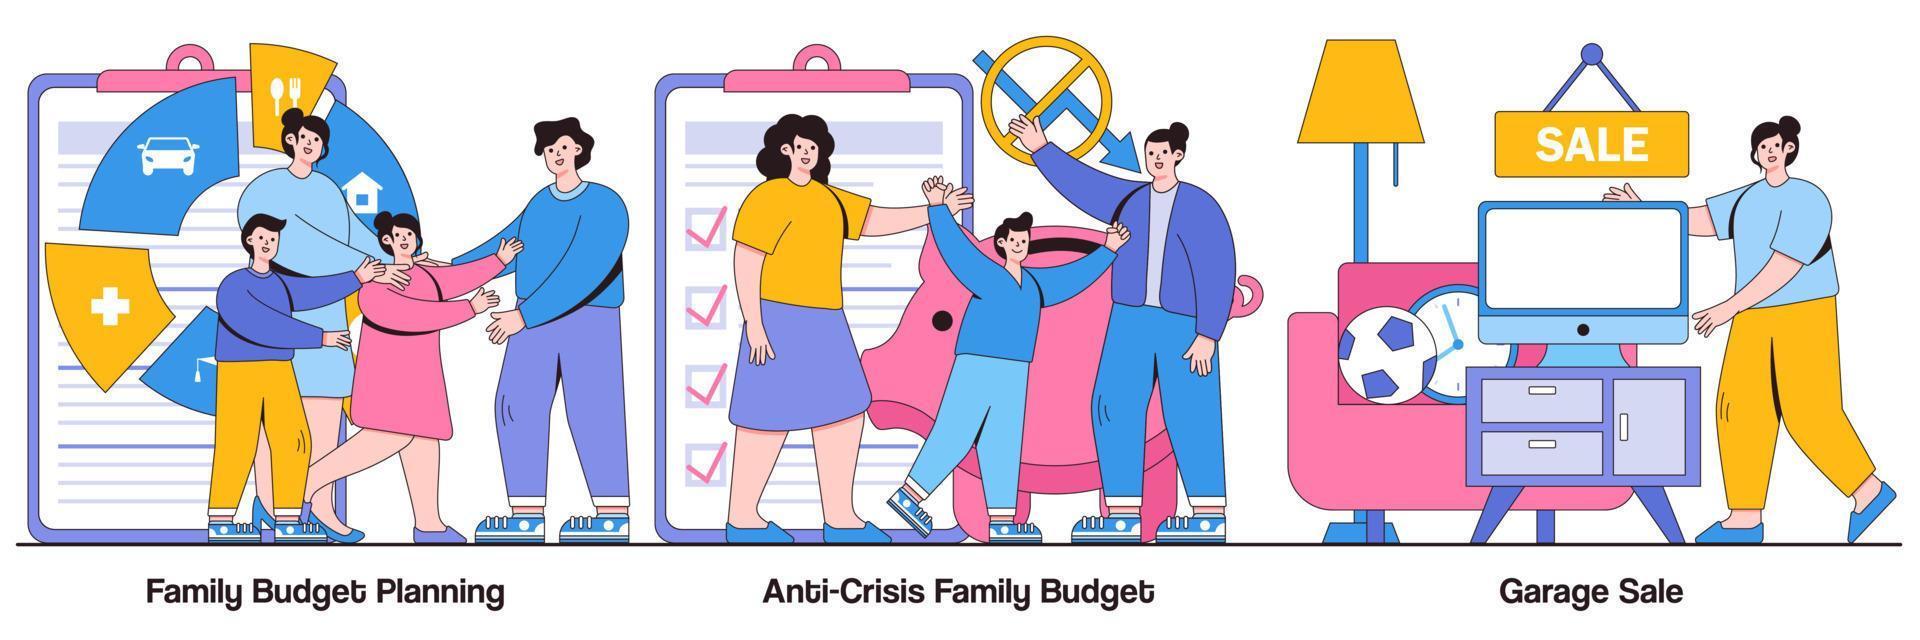 gezinsbudgetplanning, gezinsbudget tegen crisis en geïllustreerd pakket voor garageverkoop vector